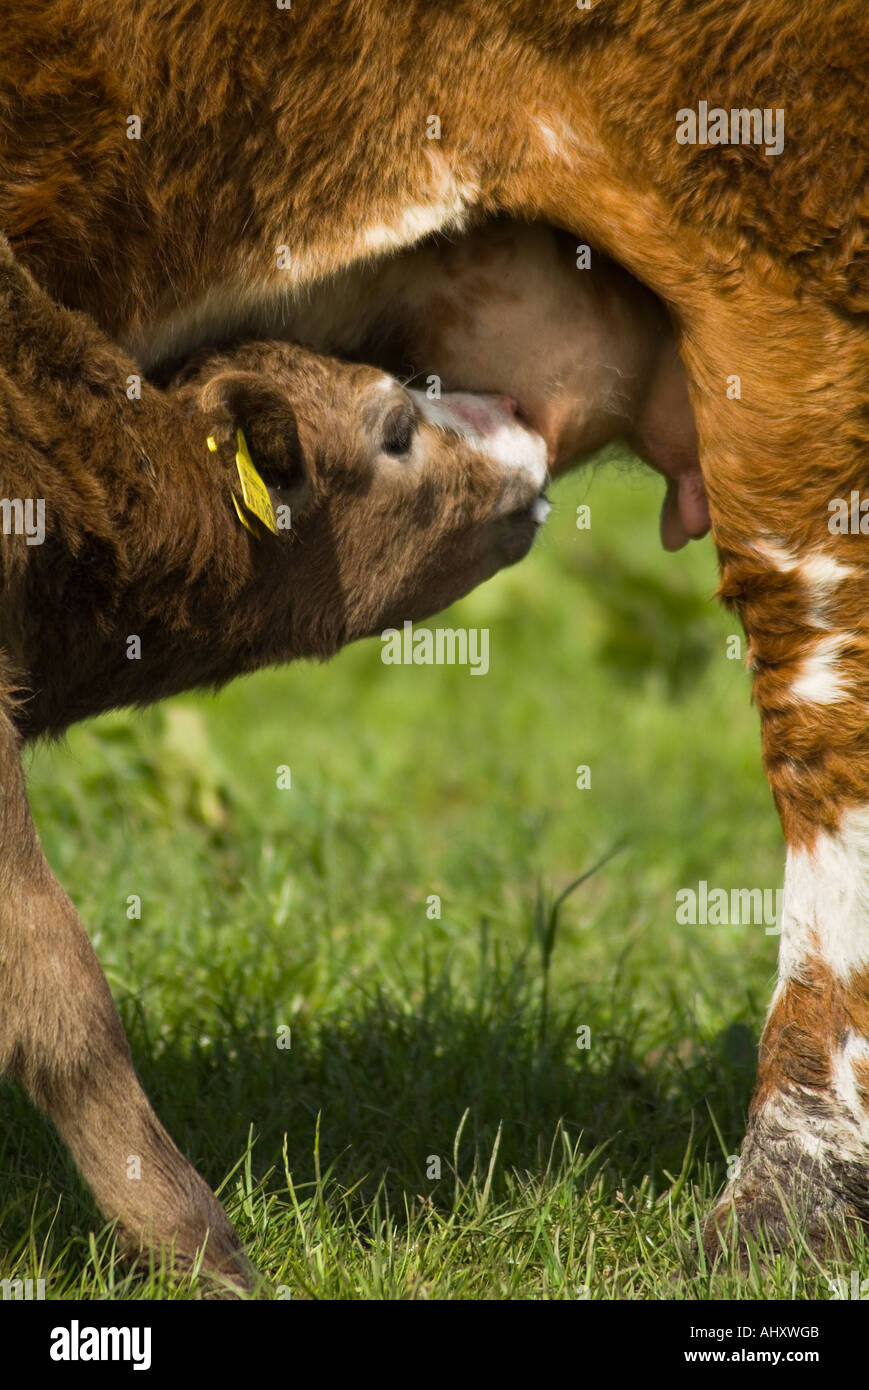 dh Calf et vaches UK Brown veau allaitant crossbreed mère vache udder lait allaitant vaches allaitantes jeunes animaux allaitant nouveau-né Banque D'Images